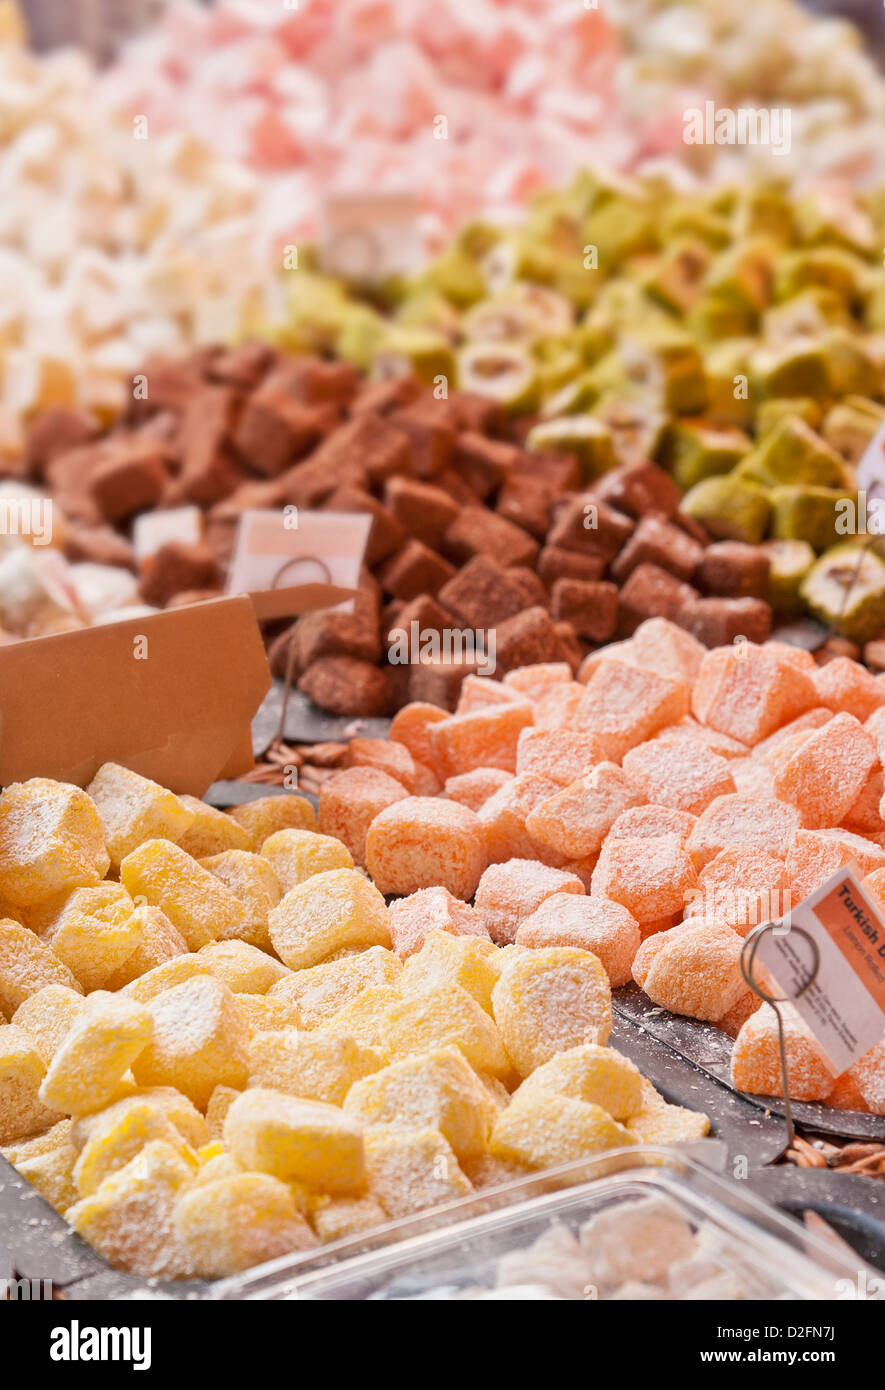 Loukoum confiserie / bonbons à un décrochage du marché UK Banque D'Images